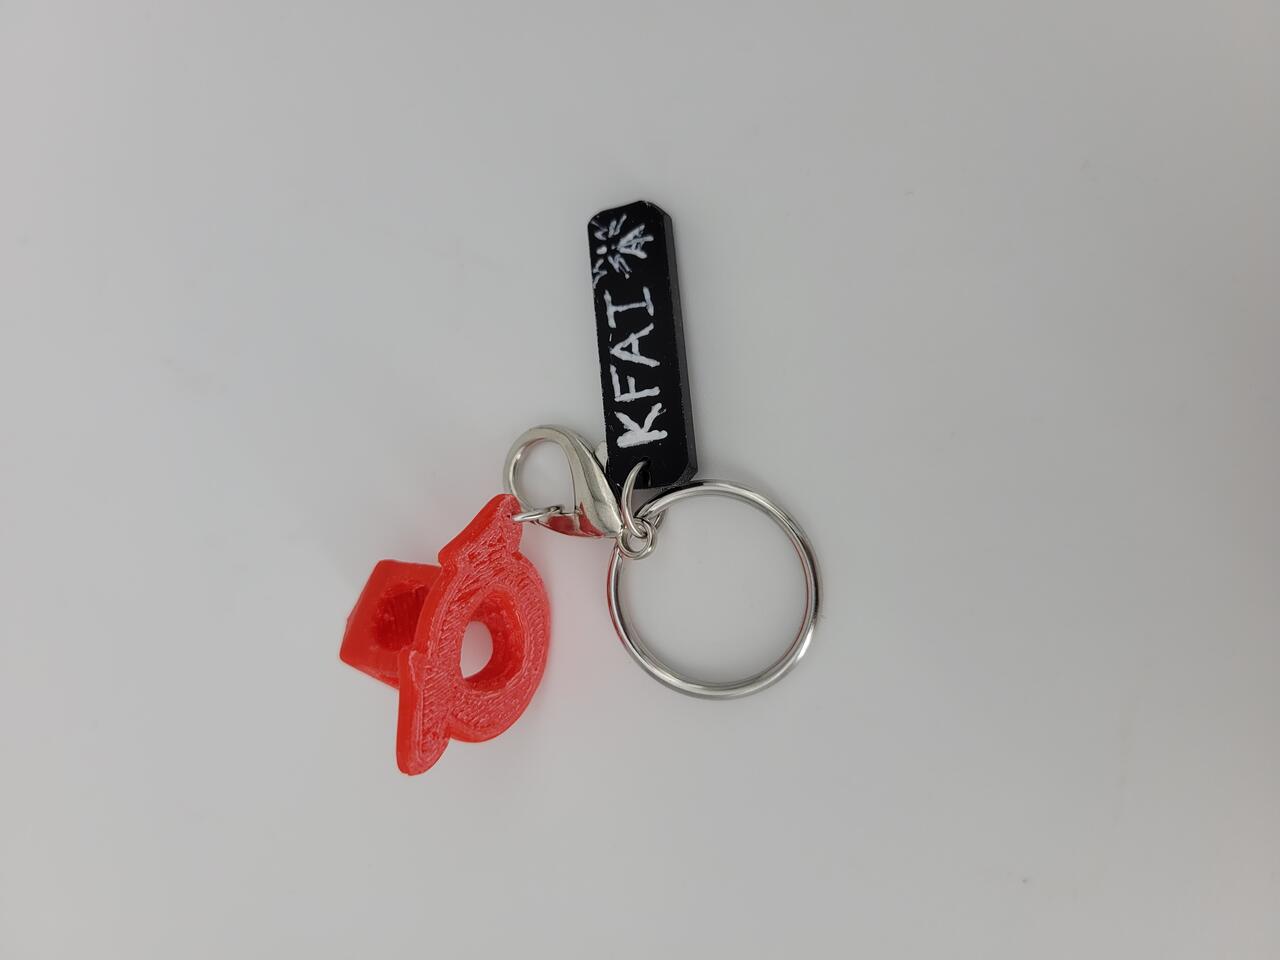 KFAI Keychain design by Ava Imholte